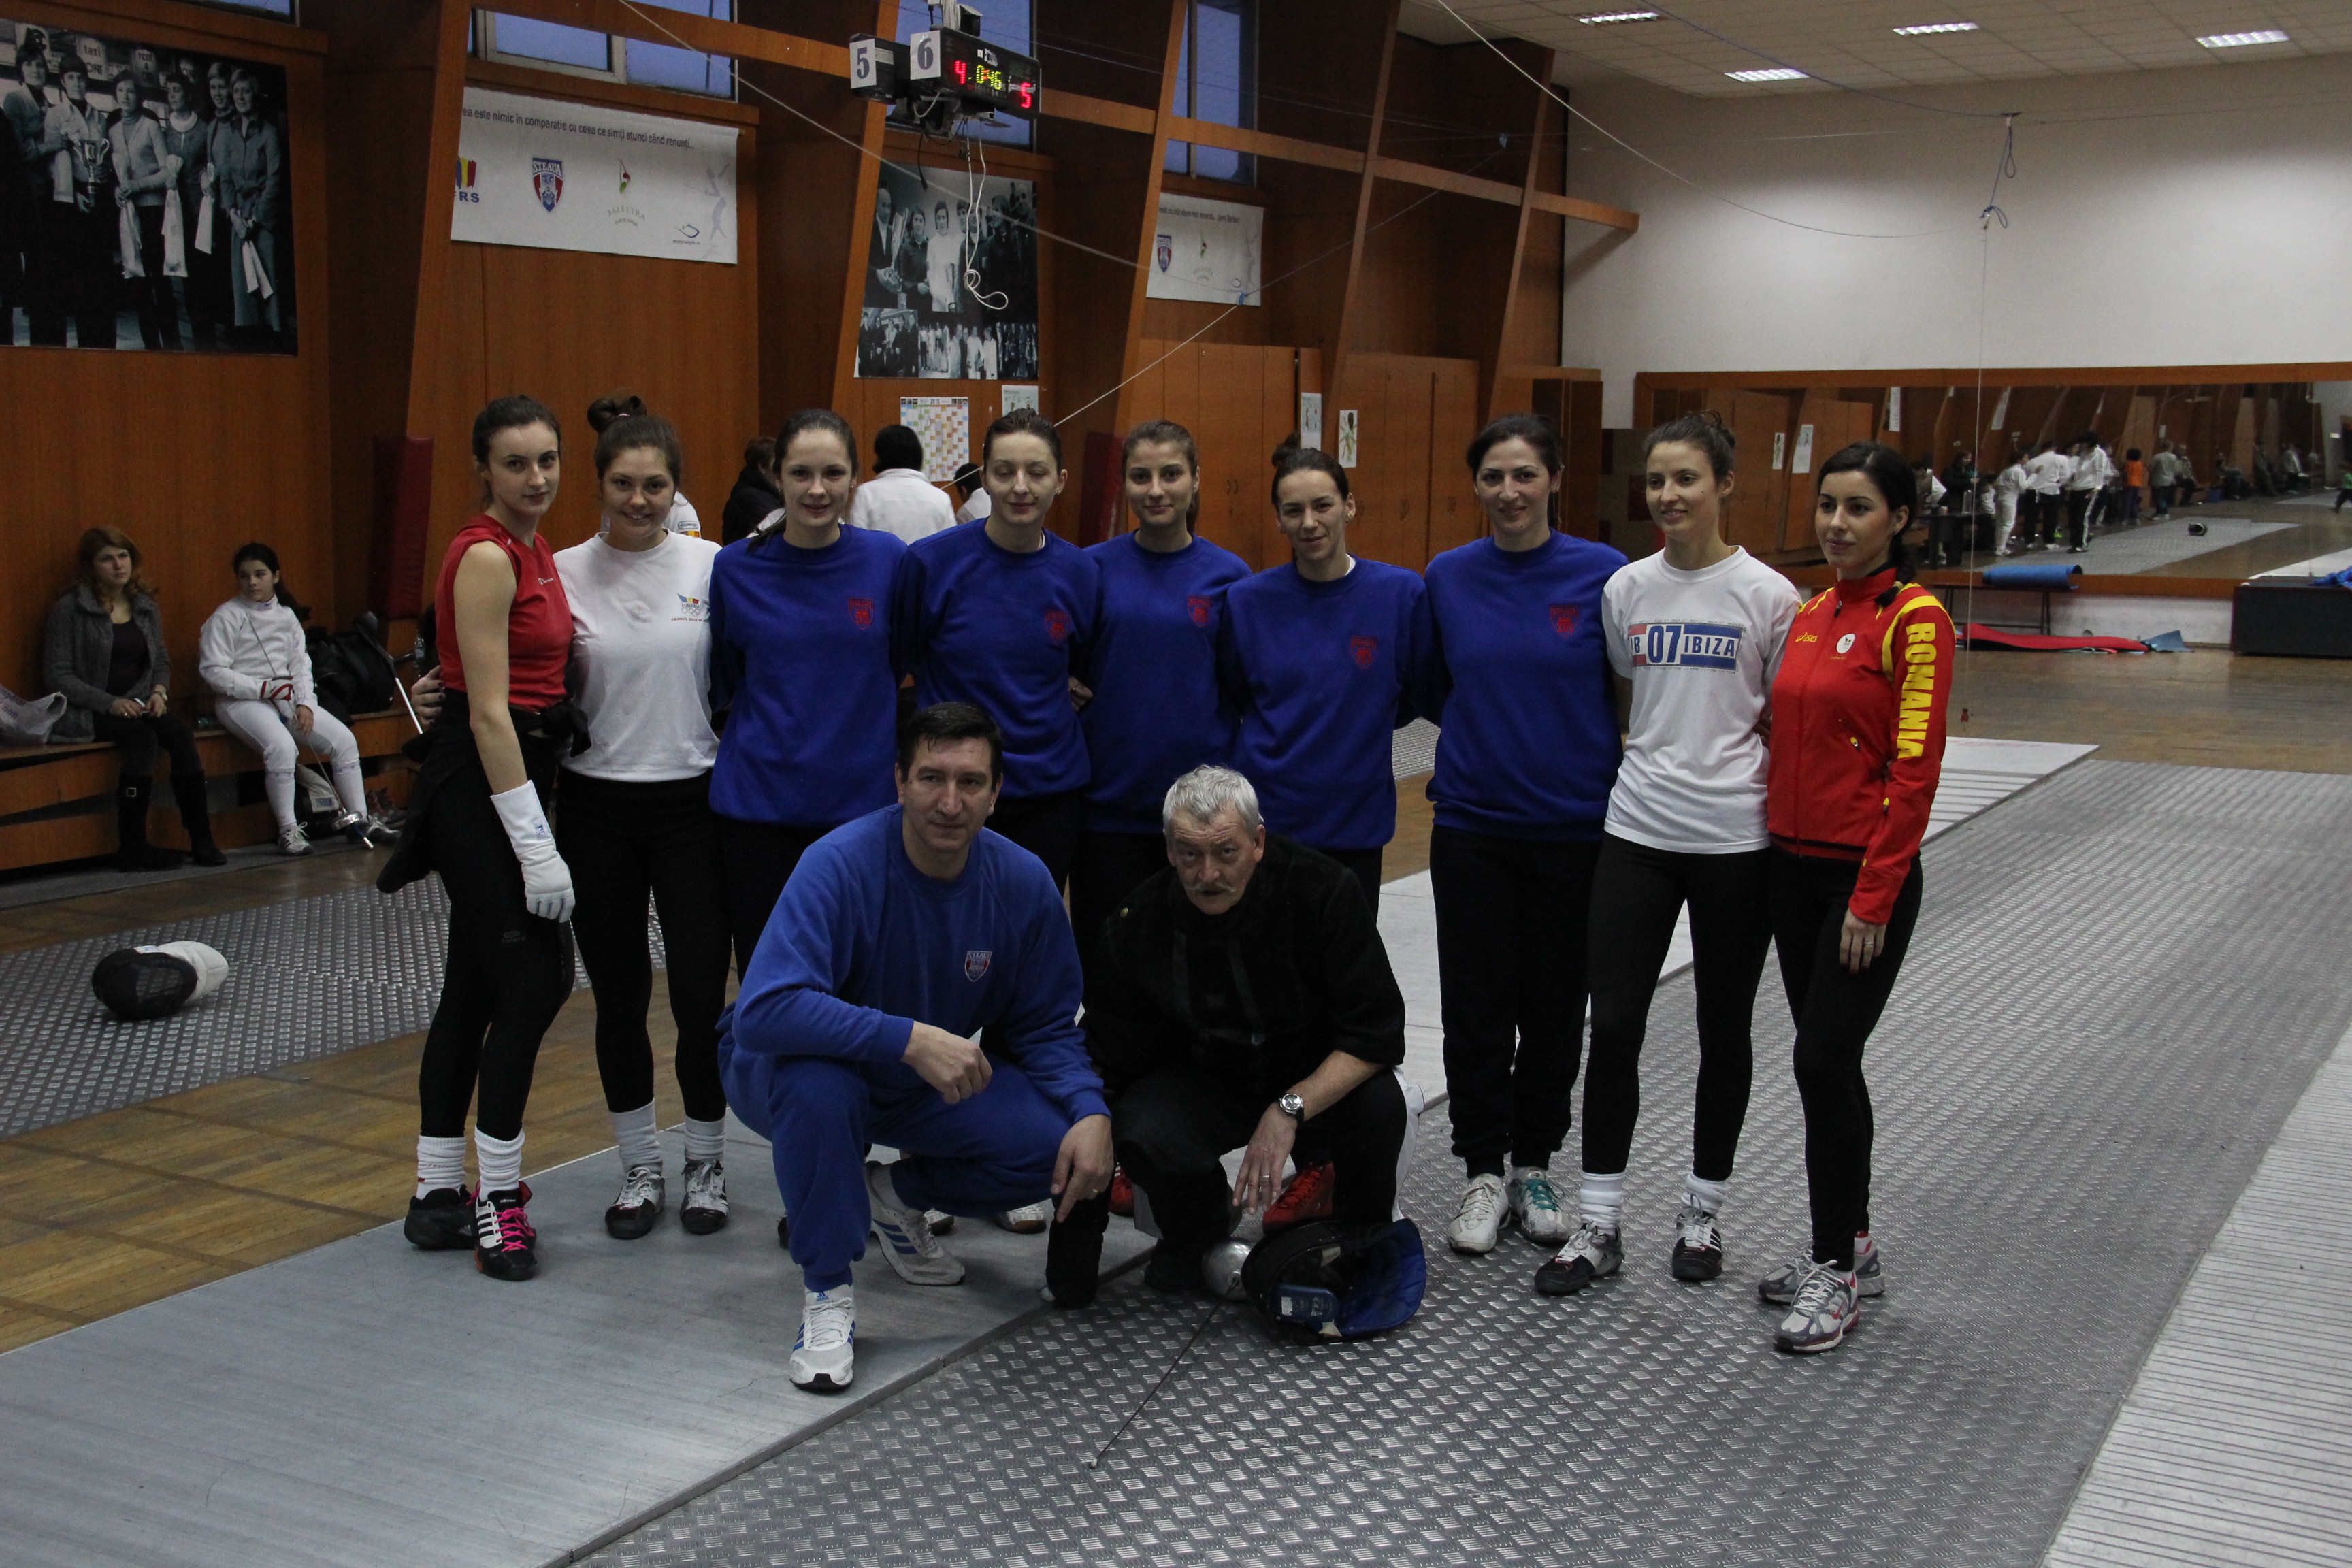 Nouă spadasine din România au plecat azi la etapa de Cupă Mondială la spadă seniori din Barcelona